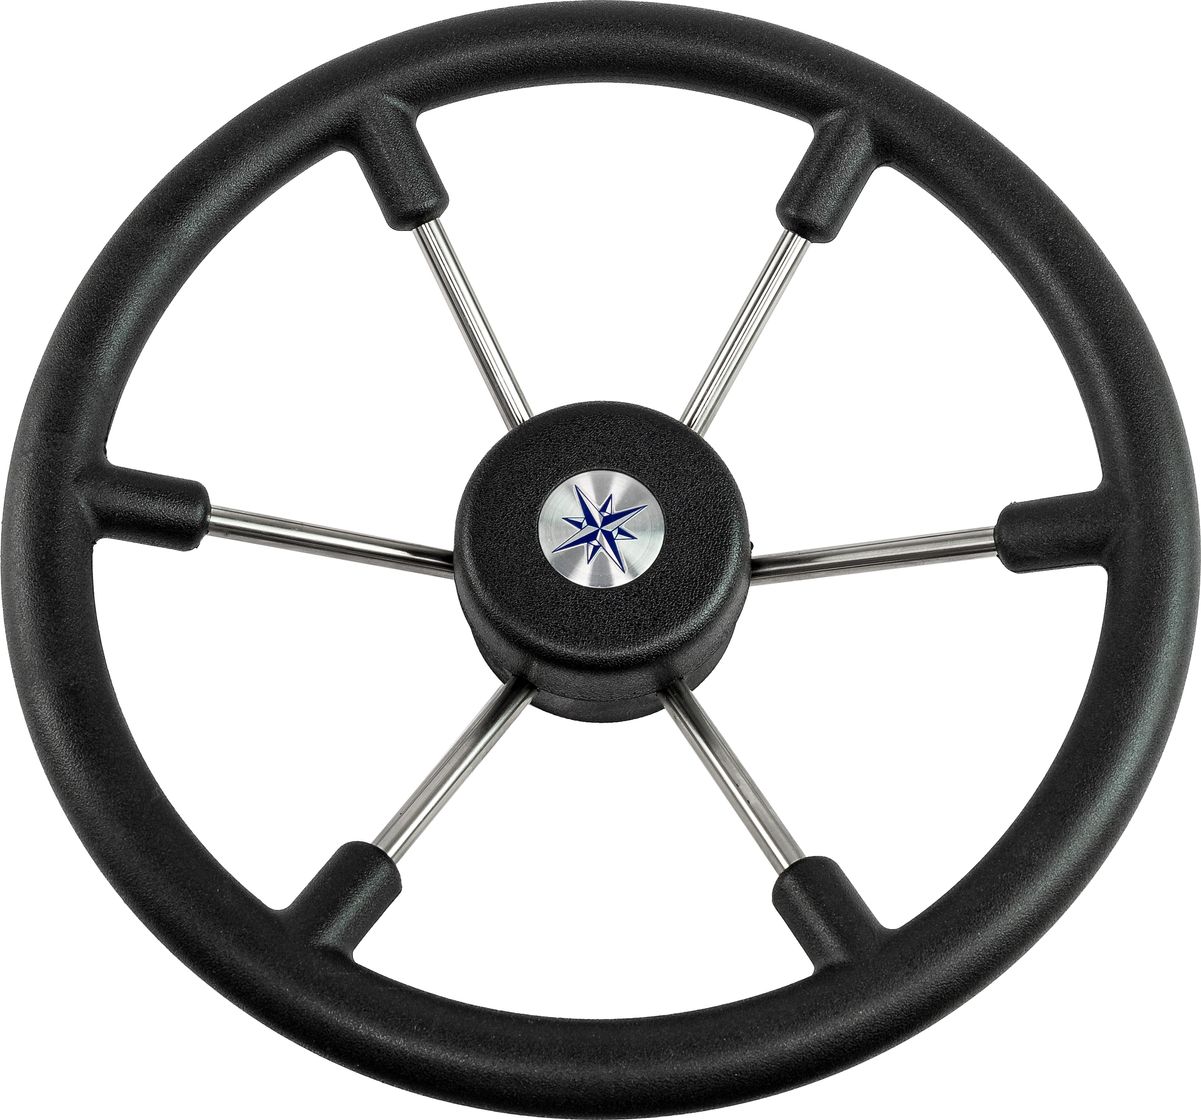 Рулевое колесо LEADER TANEGUM черный обод серебряные спицы д. 360 мм VN7360-01 рулевое колесо leader plast обод серебряные спицы д 330 мм vn8330 01